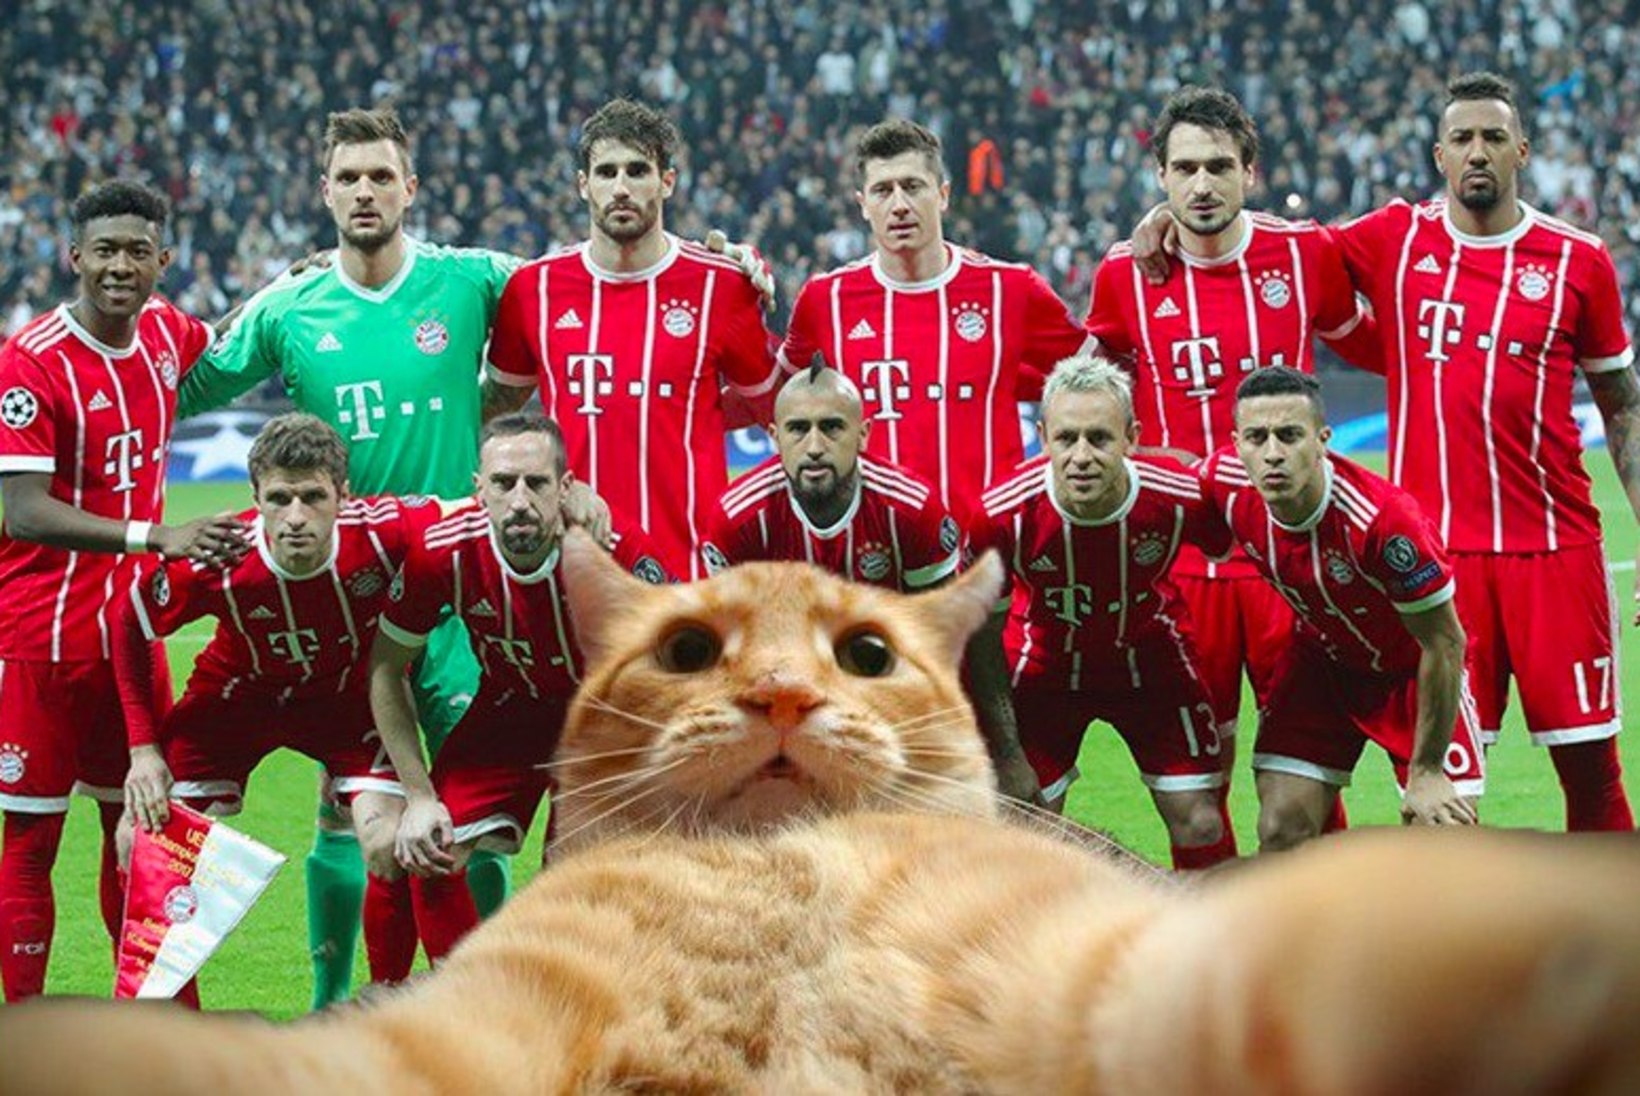 GALERII | Mängu parimaks valitud kass toob Türgi tippklubile karistuse